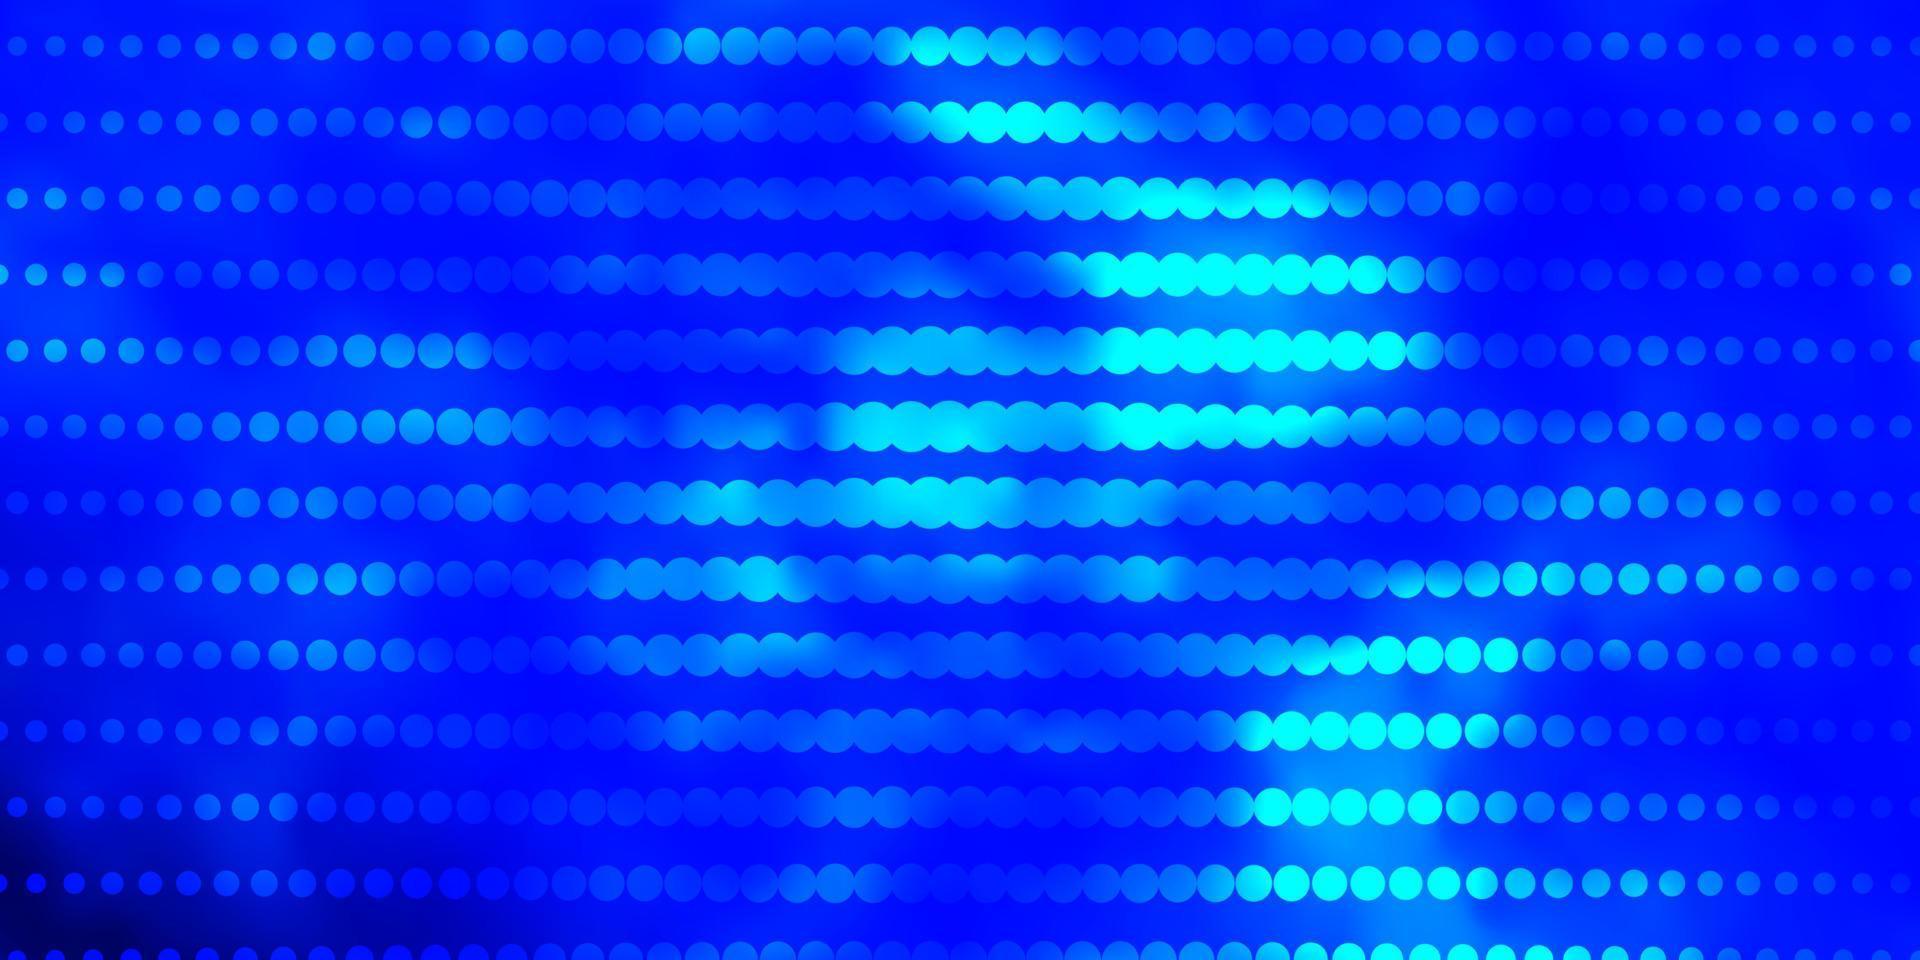 ljusblå vektor mönster med cirklar.